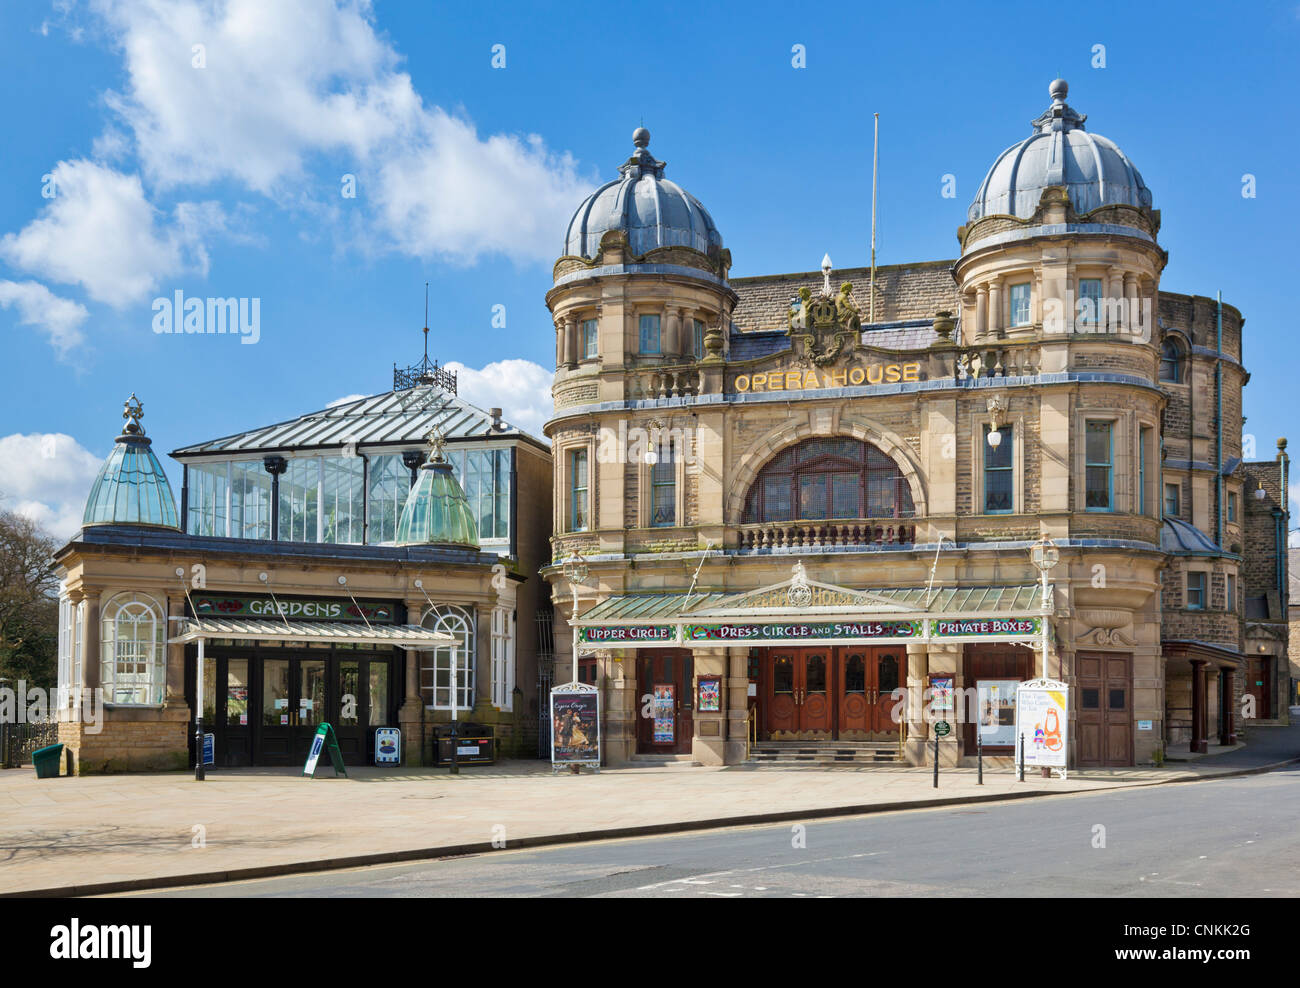 Buxton Opera house Derbyshire England GB UK Europe Stock Photo